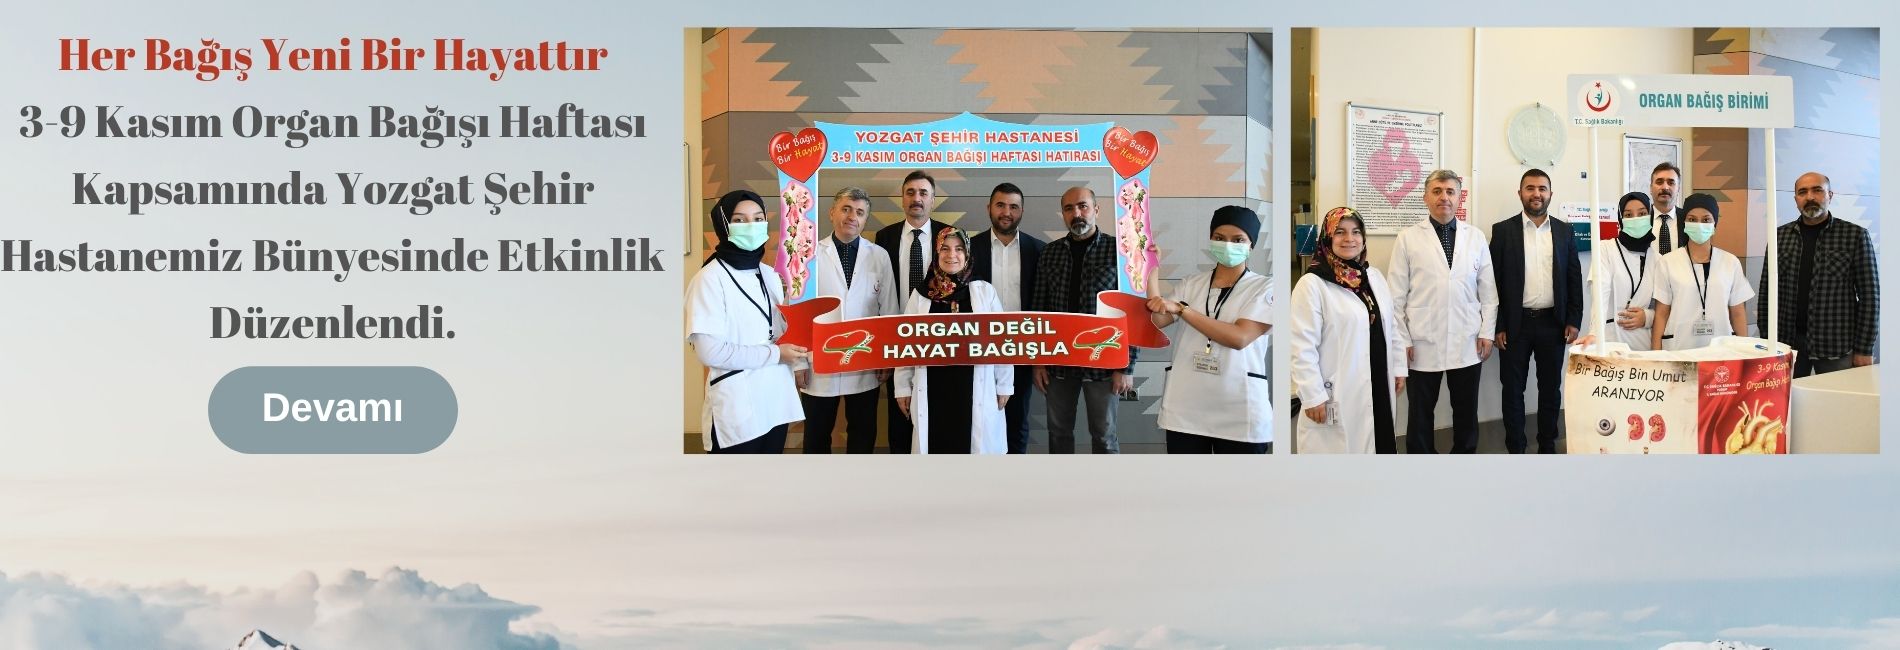 3-9 Kasım Organ Bağışı Haftası Kapsamında Yozgat Şehir Hastanemiz Bünyesinde Etkinlik Düzenlendi